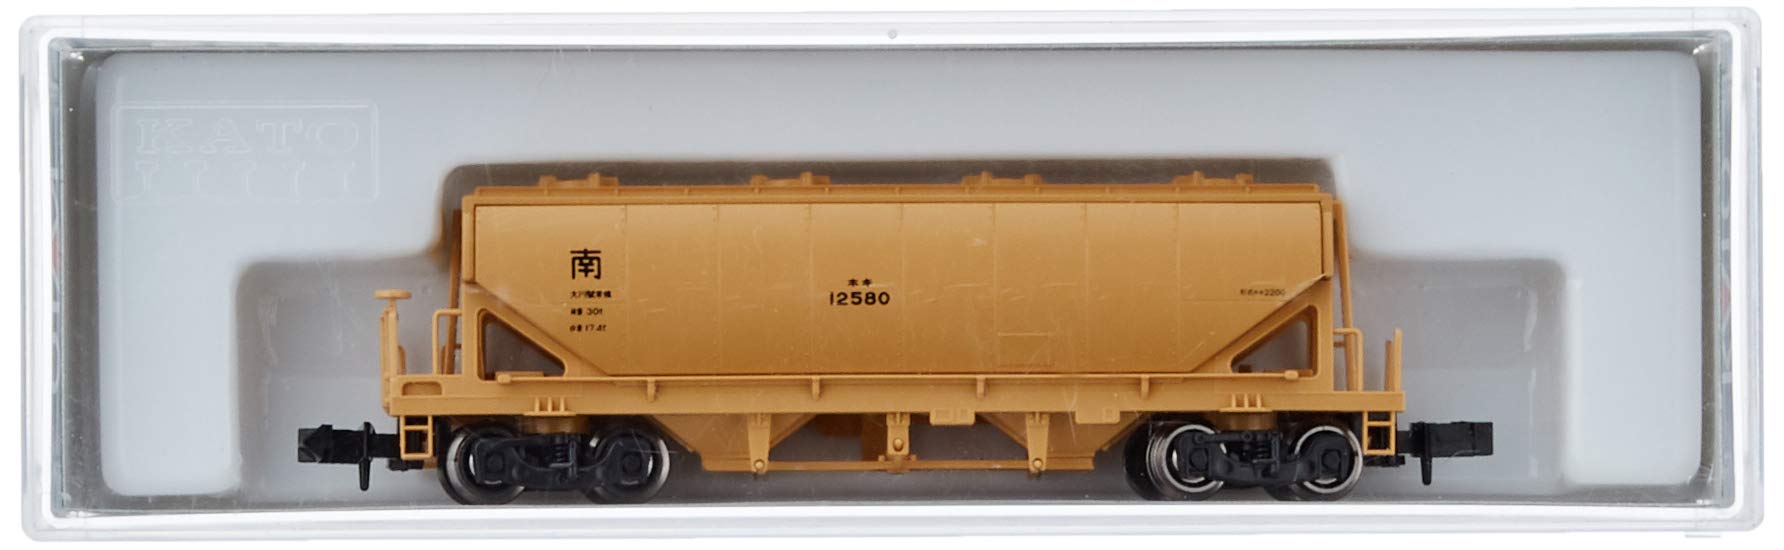 Kato N Gauge 8016 Freight Car Hoki2200